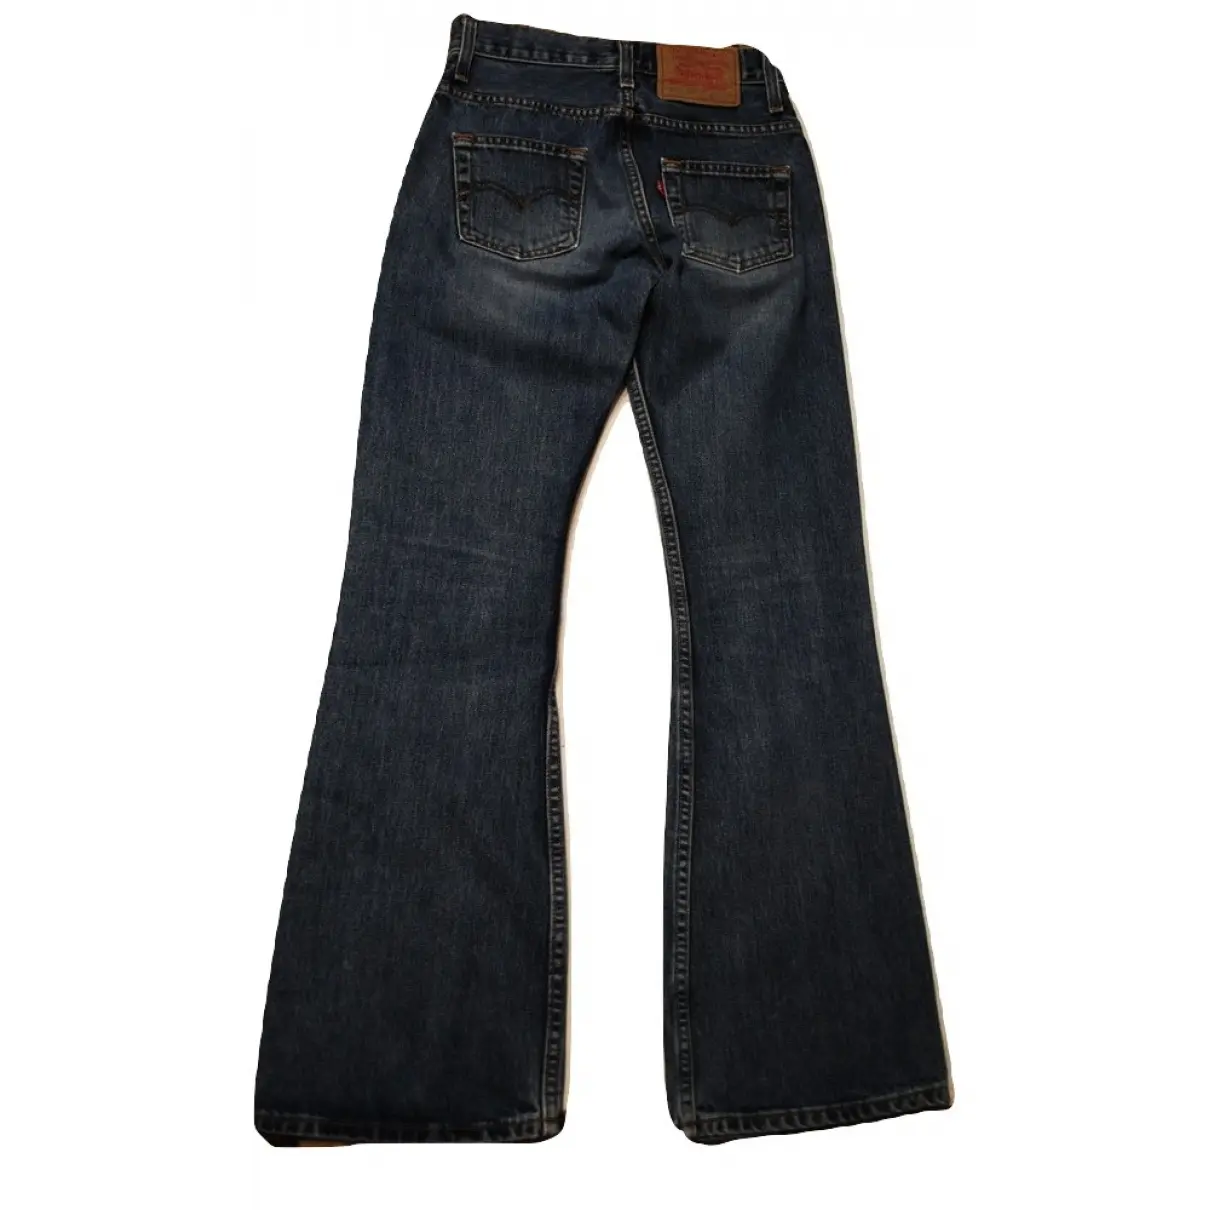 Levi's Blue Denim - Jeans Jeans for sale - Vintage